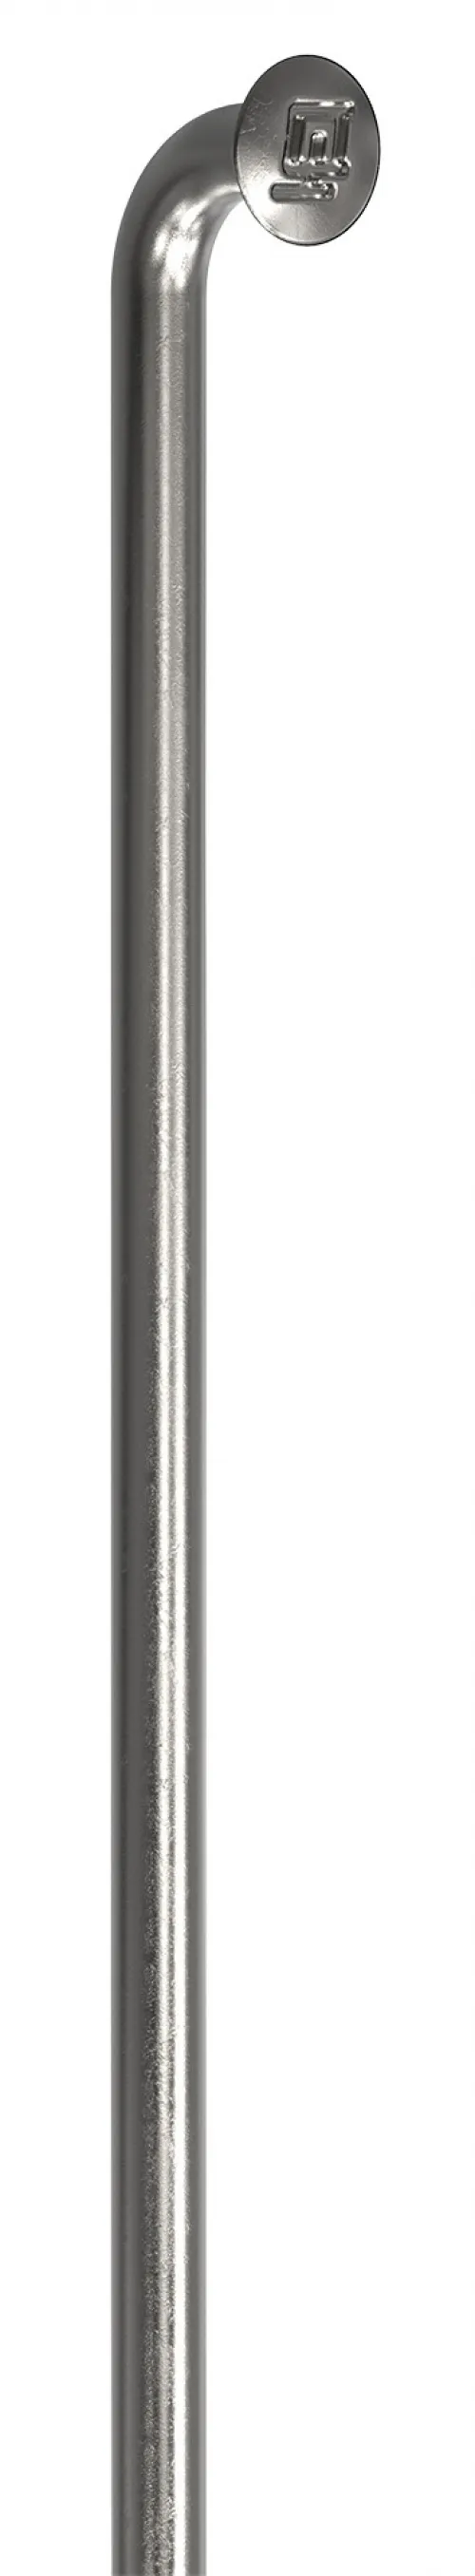 Спицы DT Swiss Champion (J-bend) 2.0mm x 189mm silver 100шт